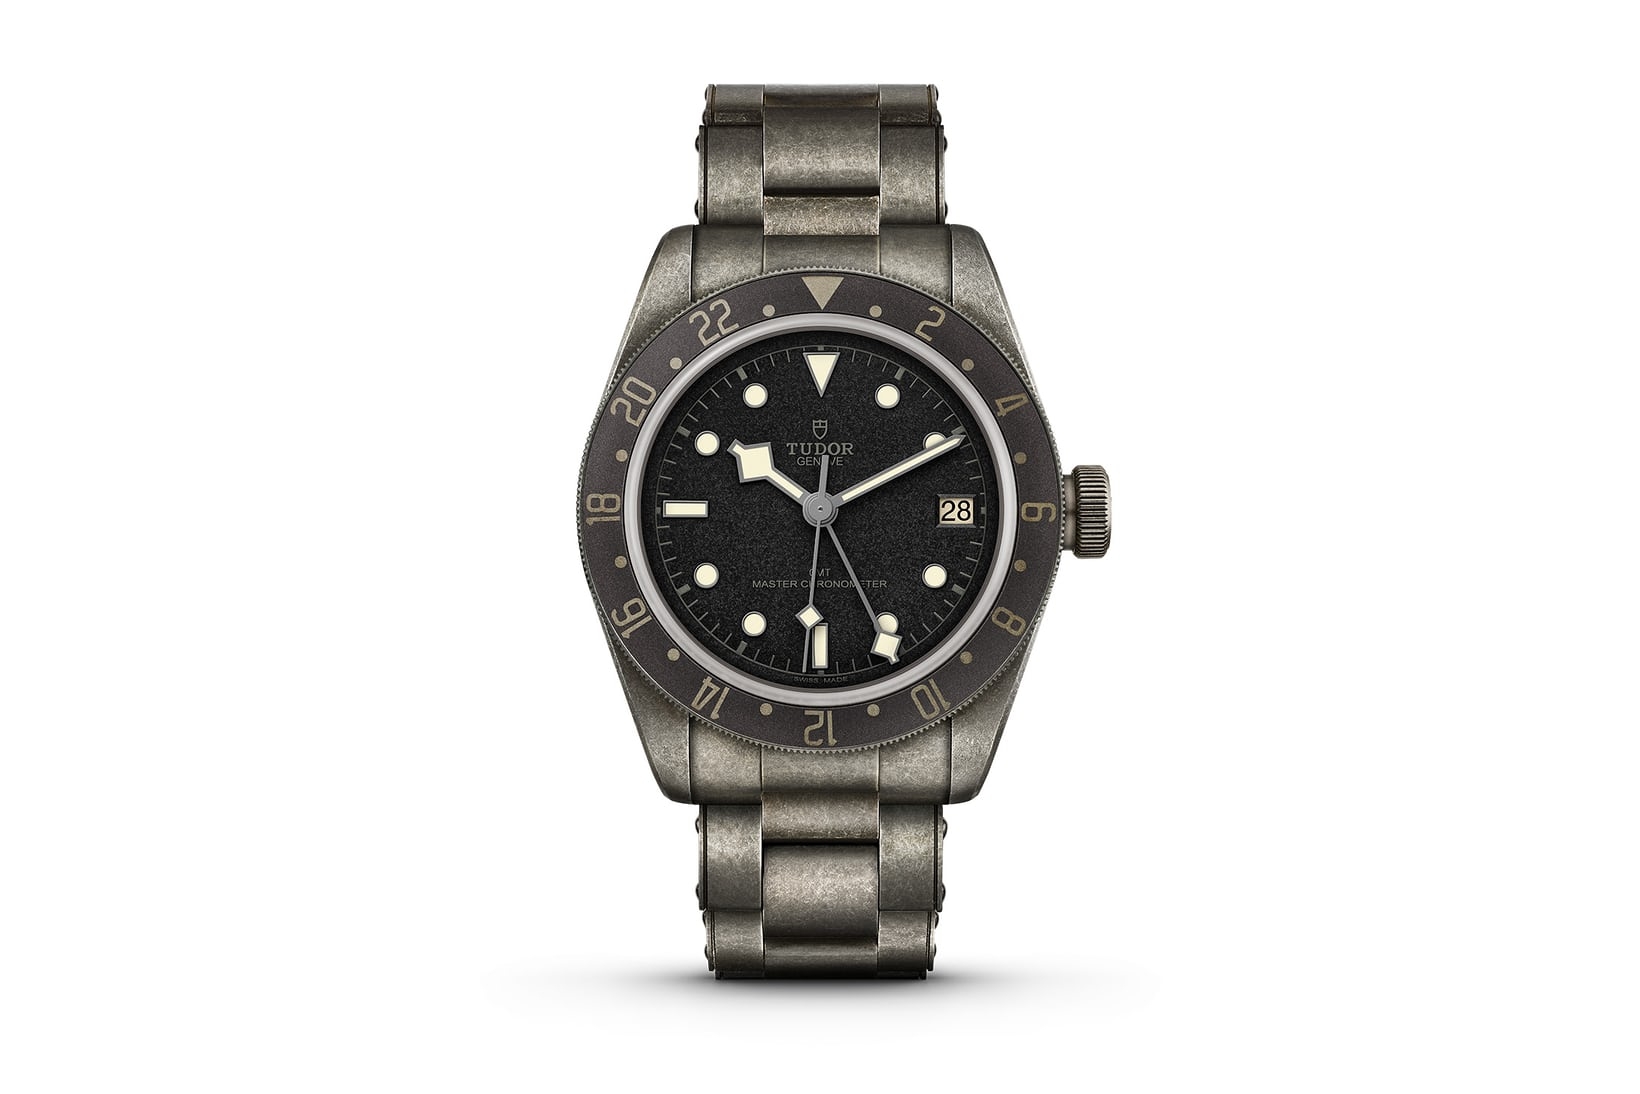 Đồng hồ Tudor Black Bay GMT One Only Watch 2021 được bán với giá gấp gần 100 lần giá ước tính 